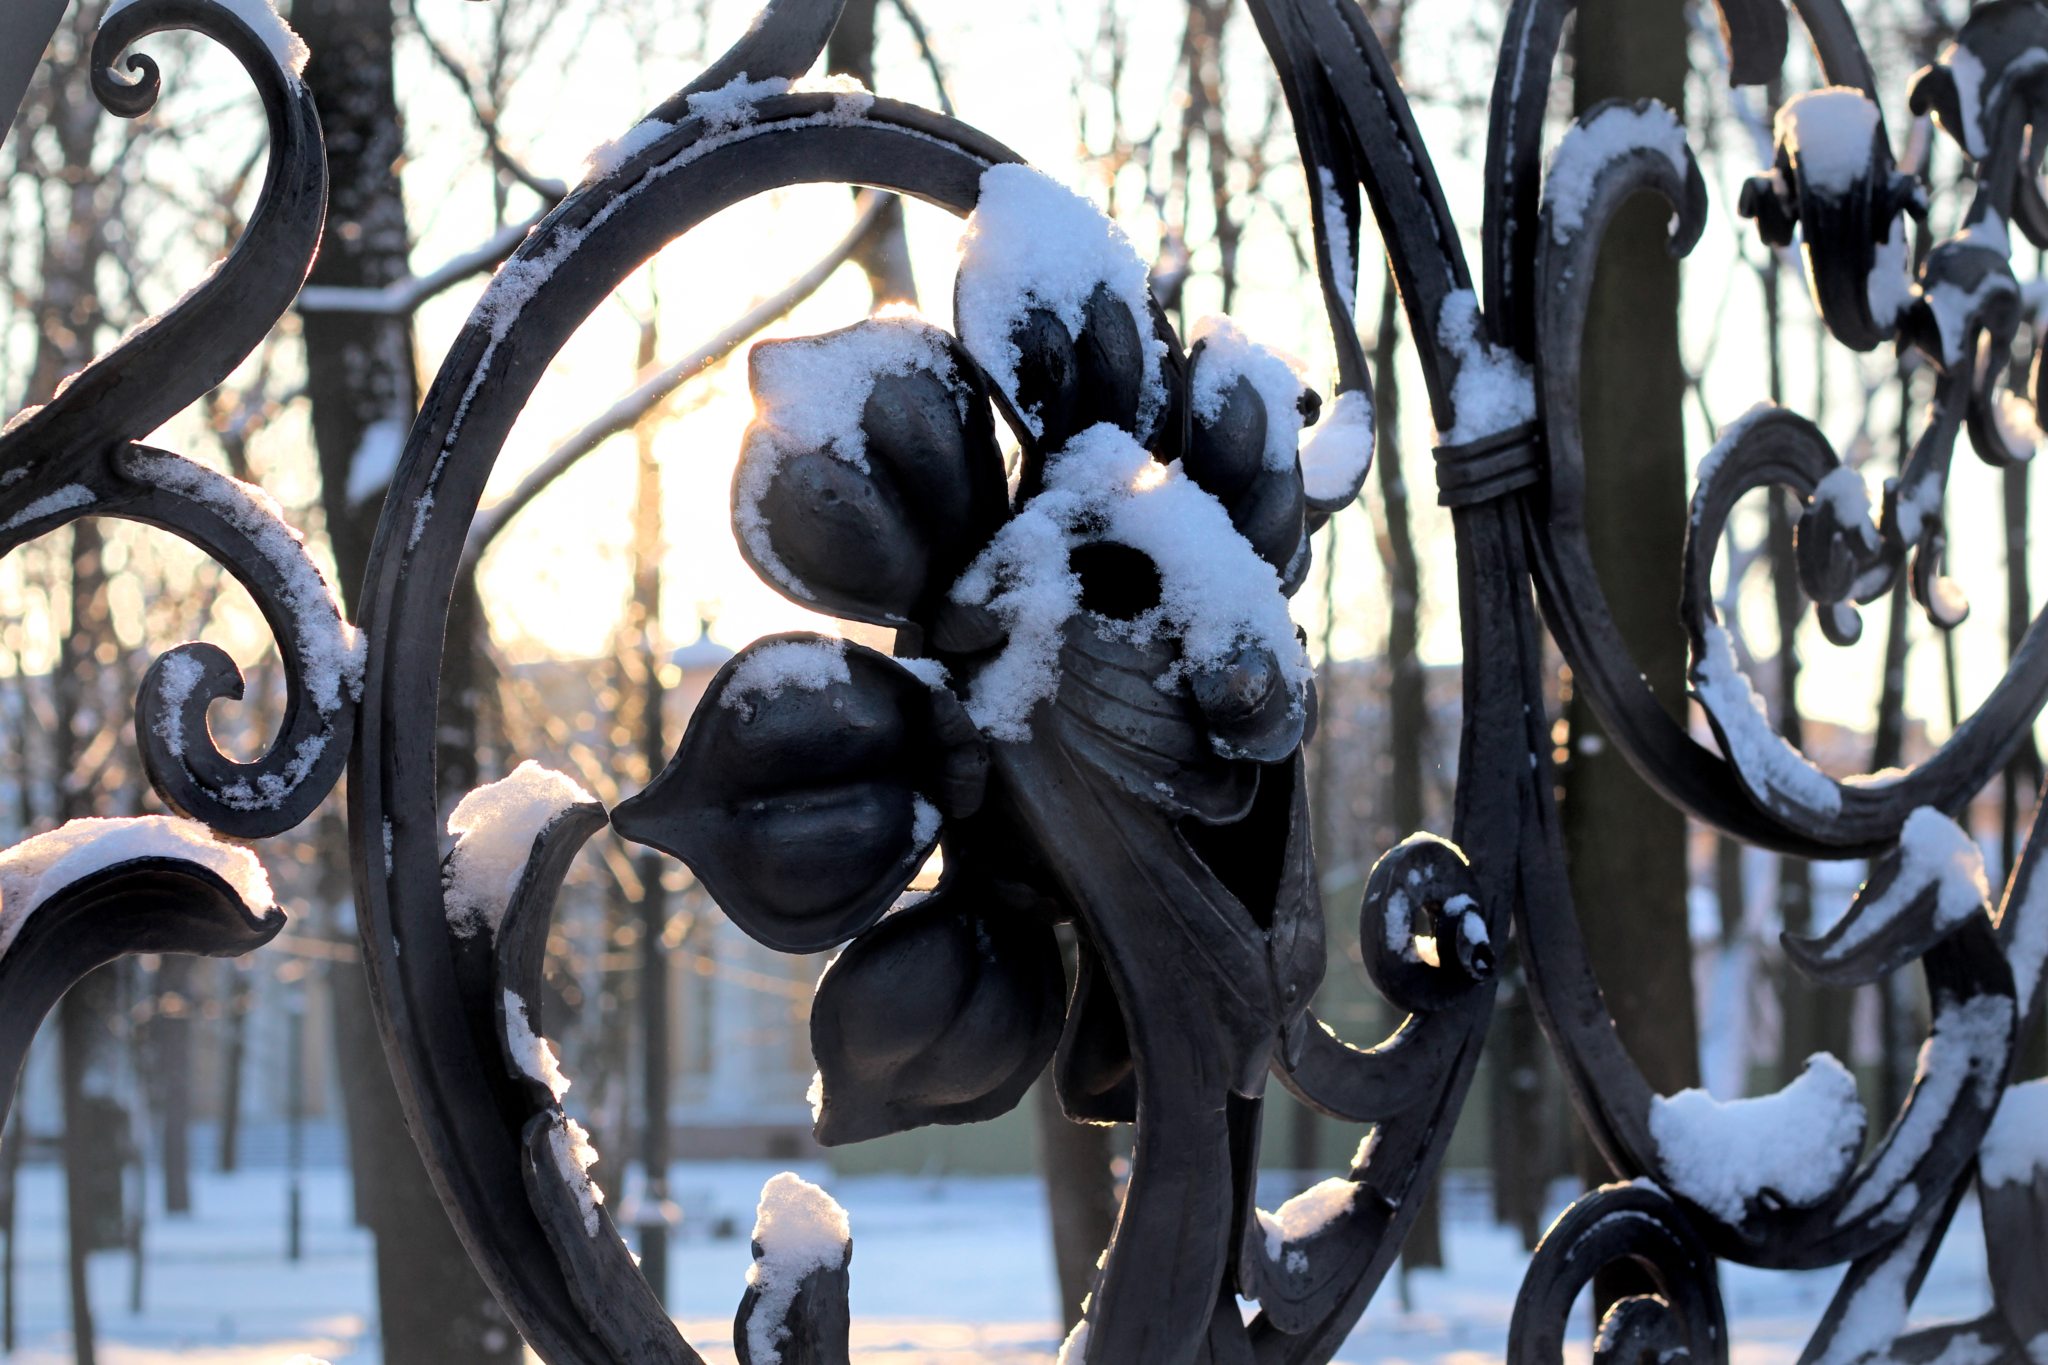 Решетка михайловского сада в санкт петербурге фото